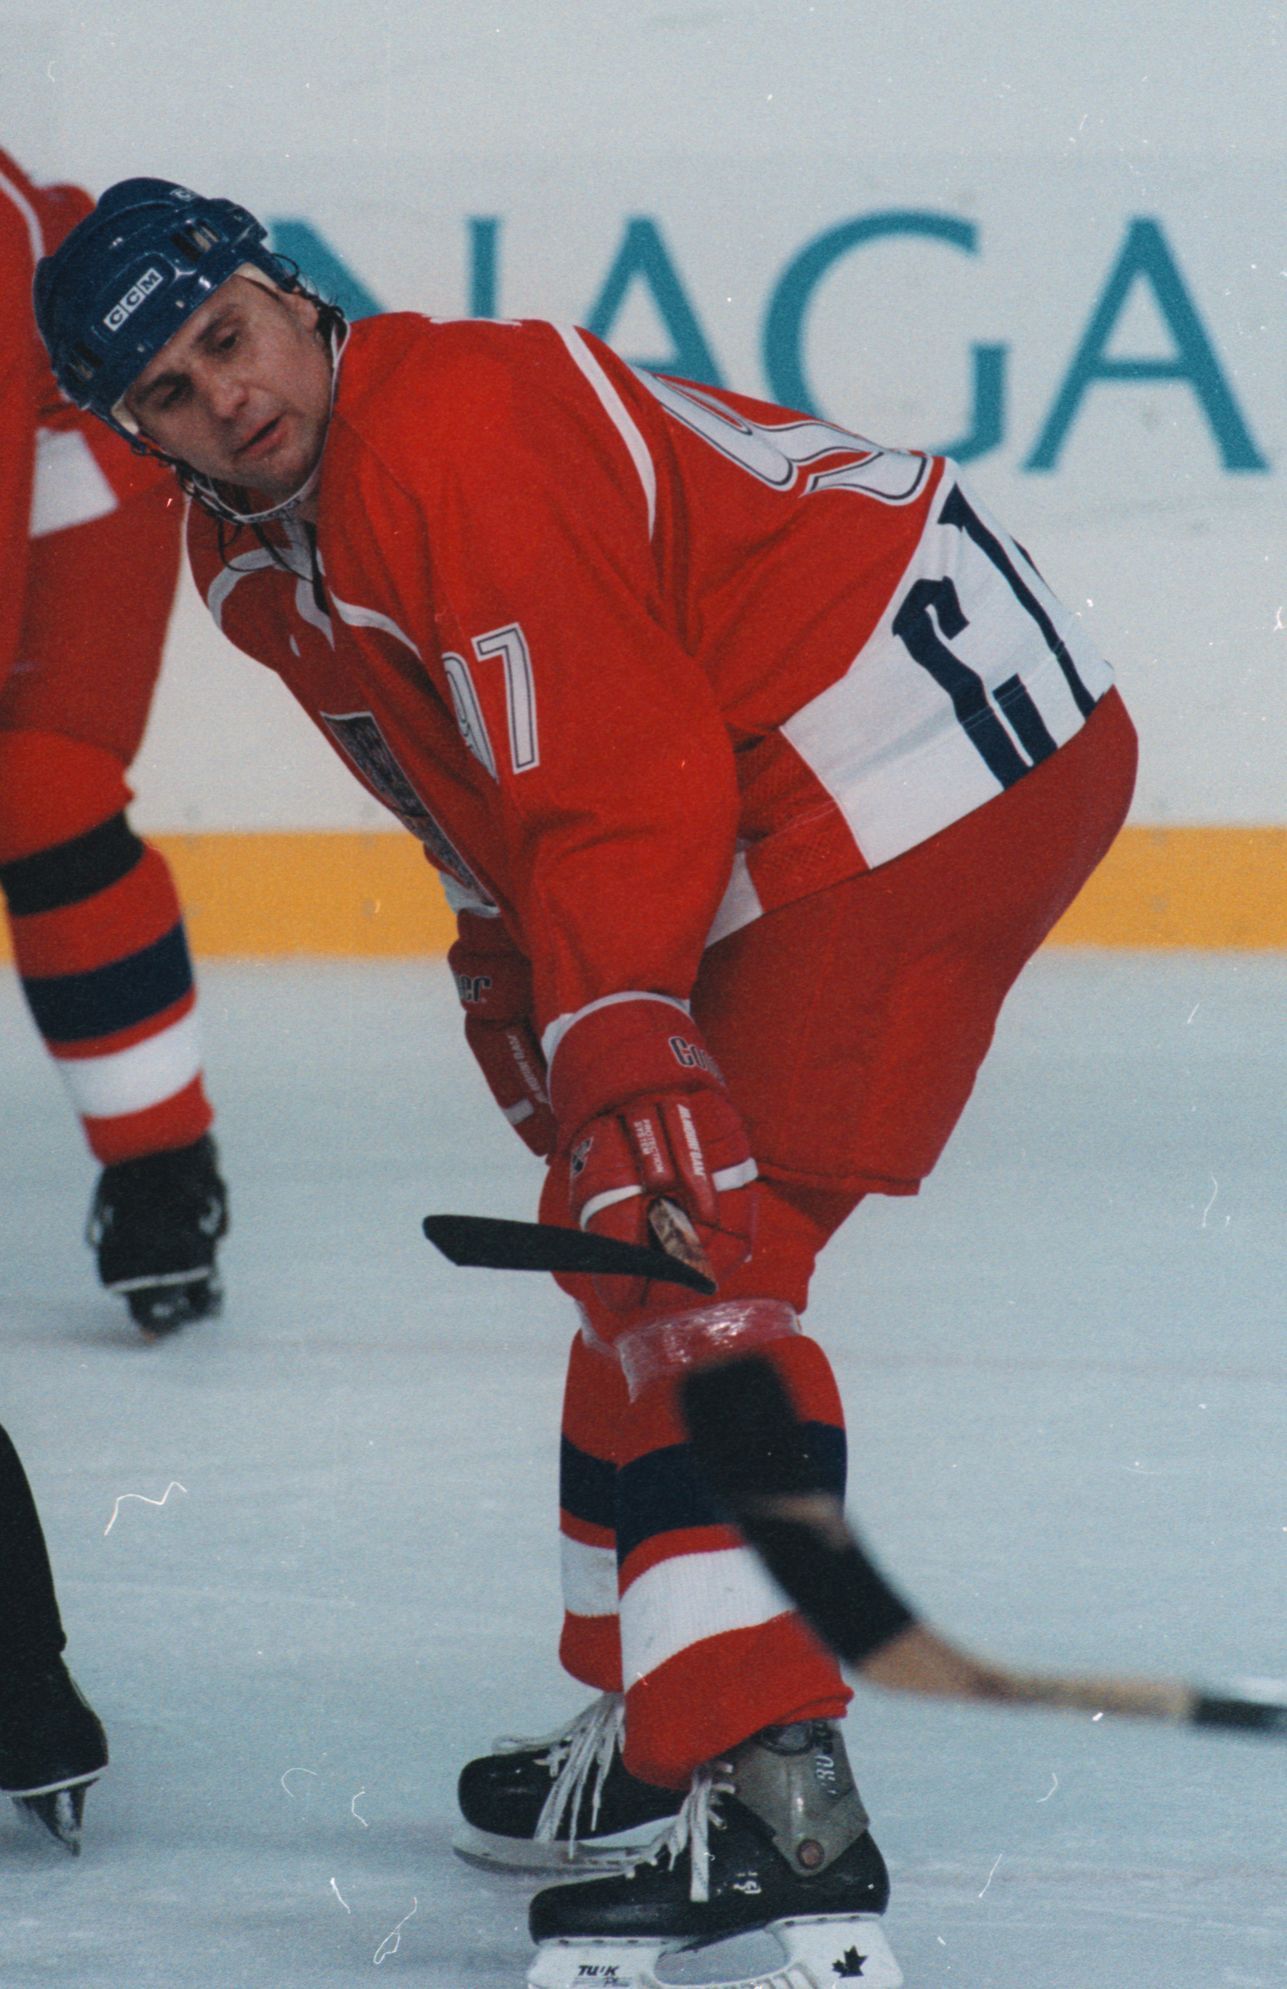 Nagano 1998: Vladimír Růžička